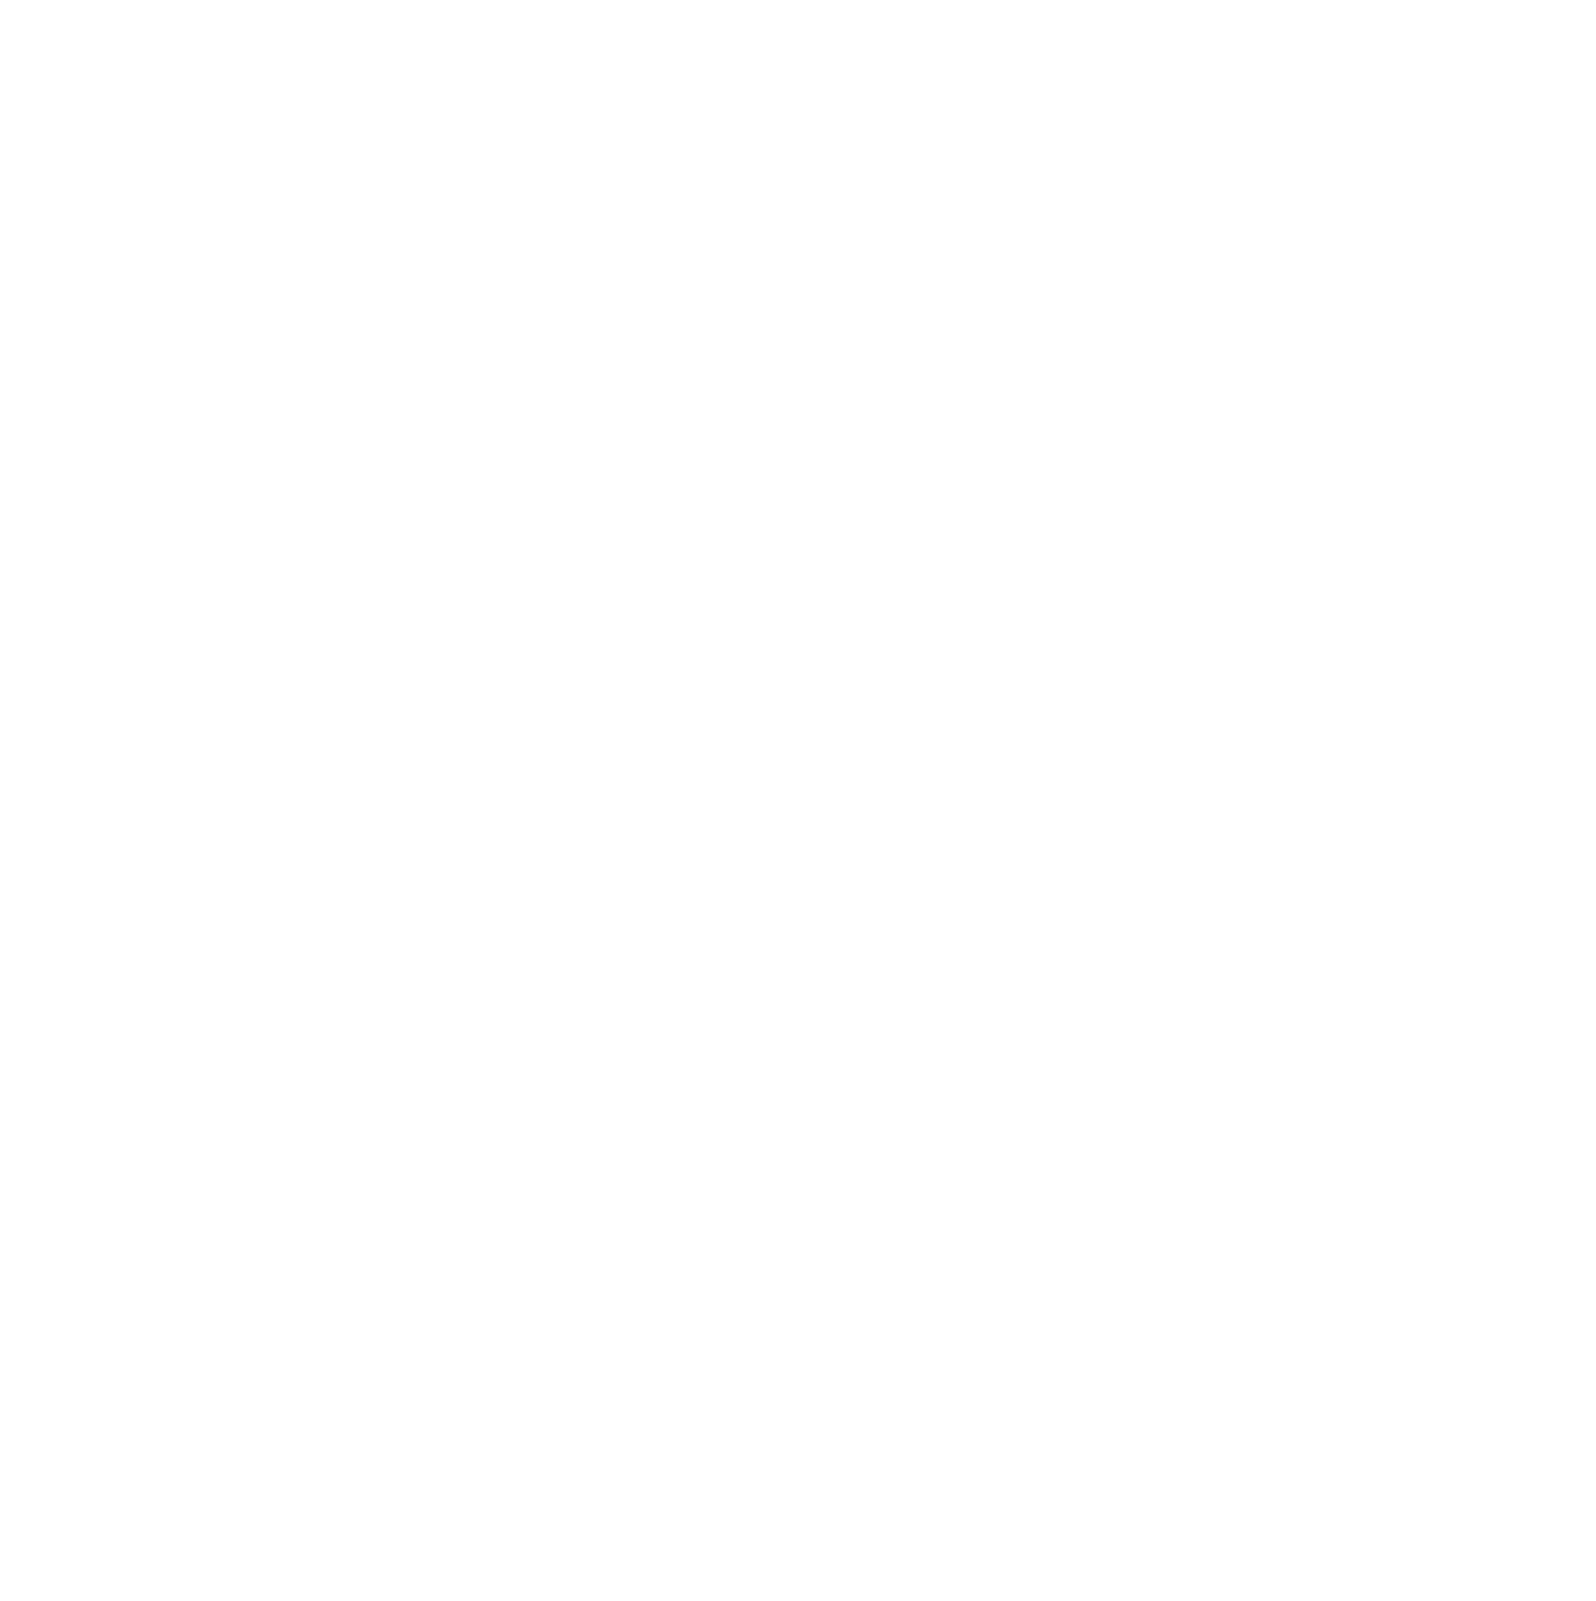 Söktas Tekstil logo large for dark backgrounds (transparent PNG)